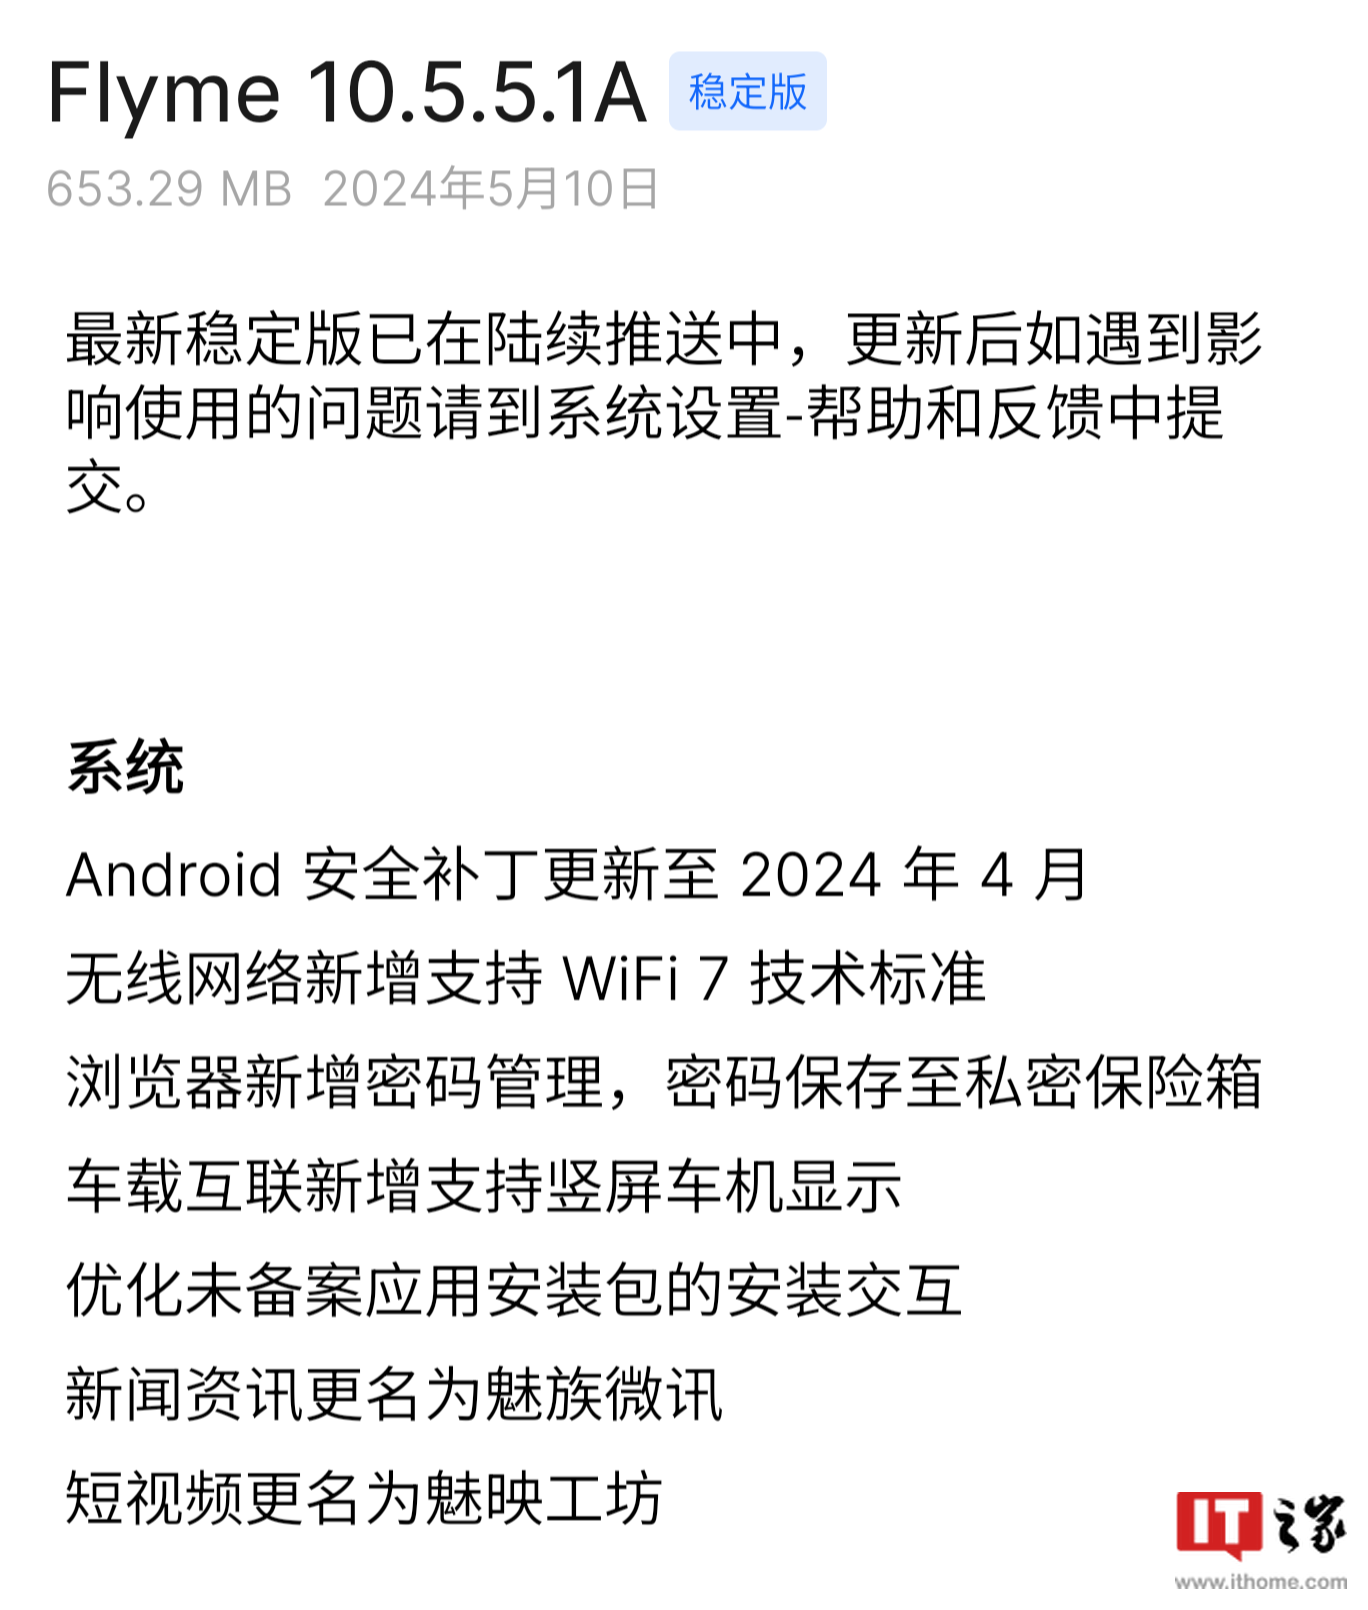 支持 Wi-Fi 7 技术标准，魅族 21 / Pro 手机获推 Flyme 10.5.5.1A 系统更新